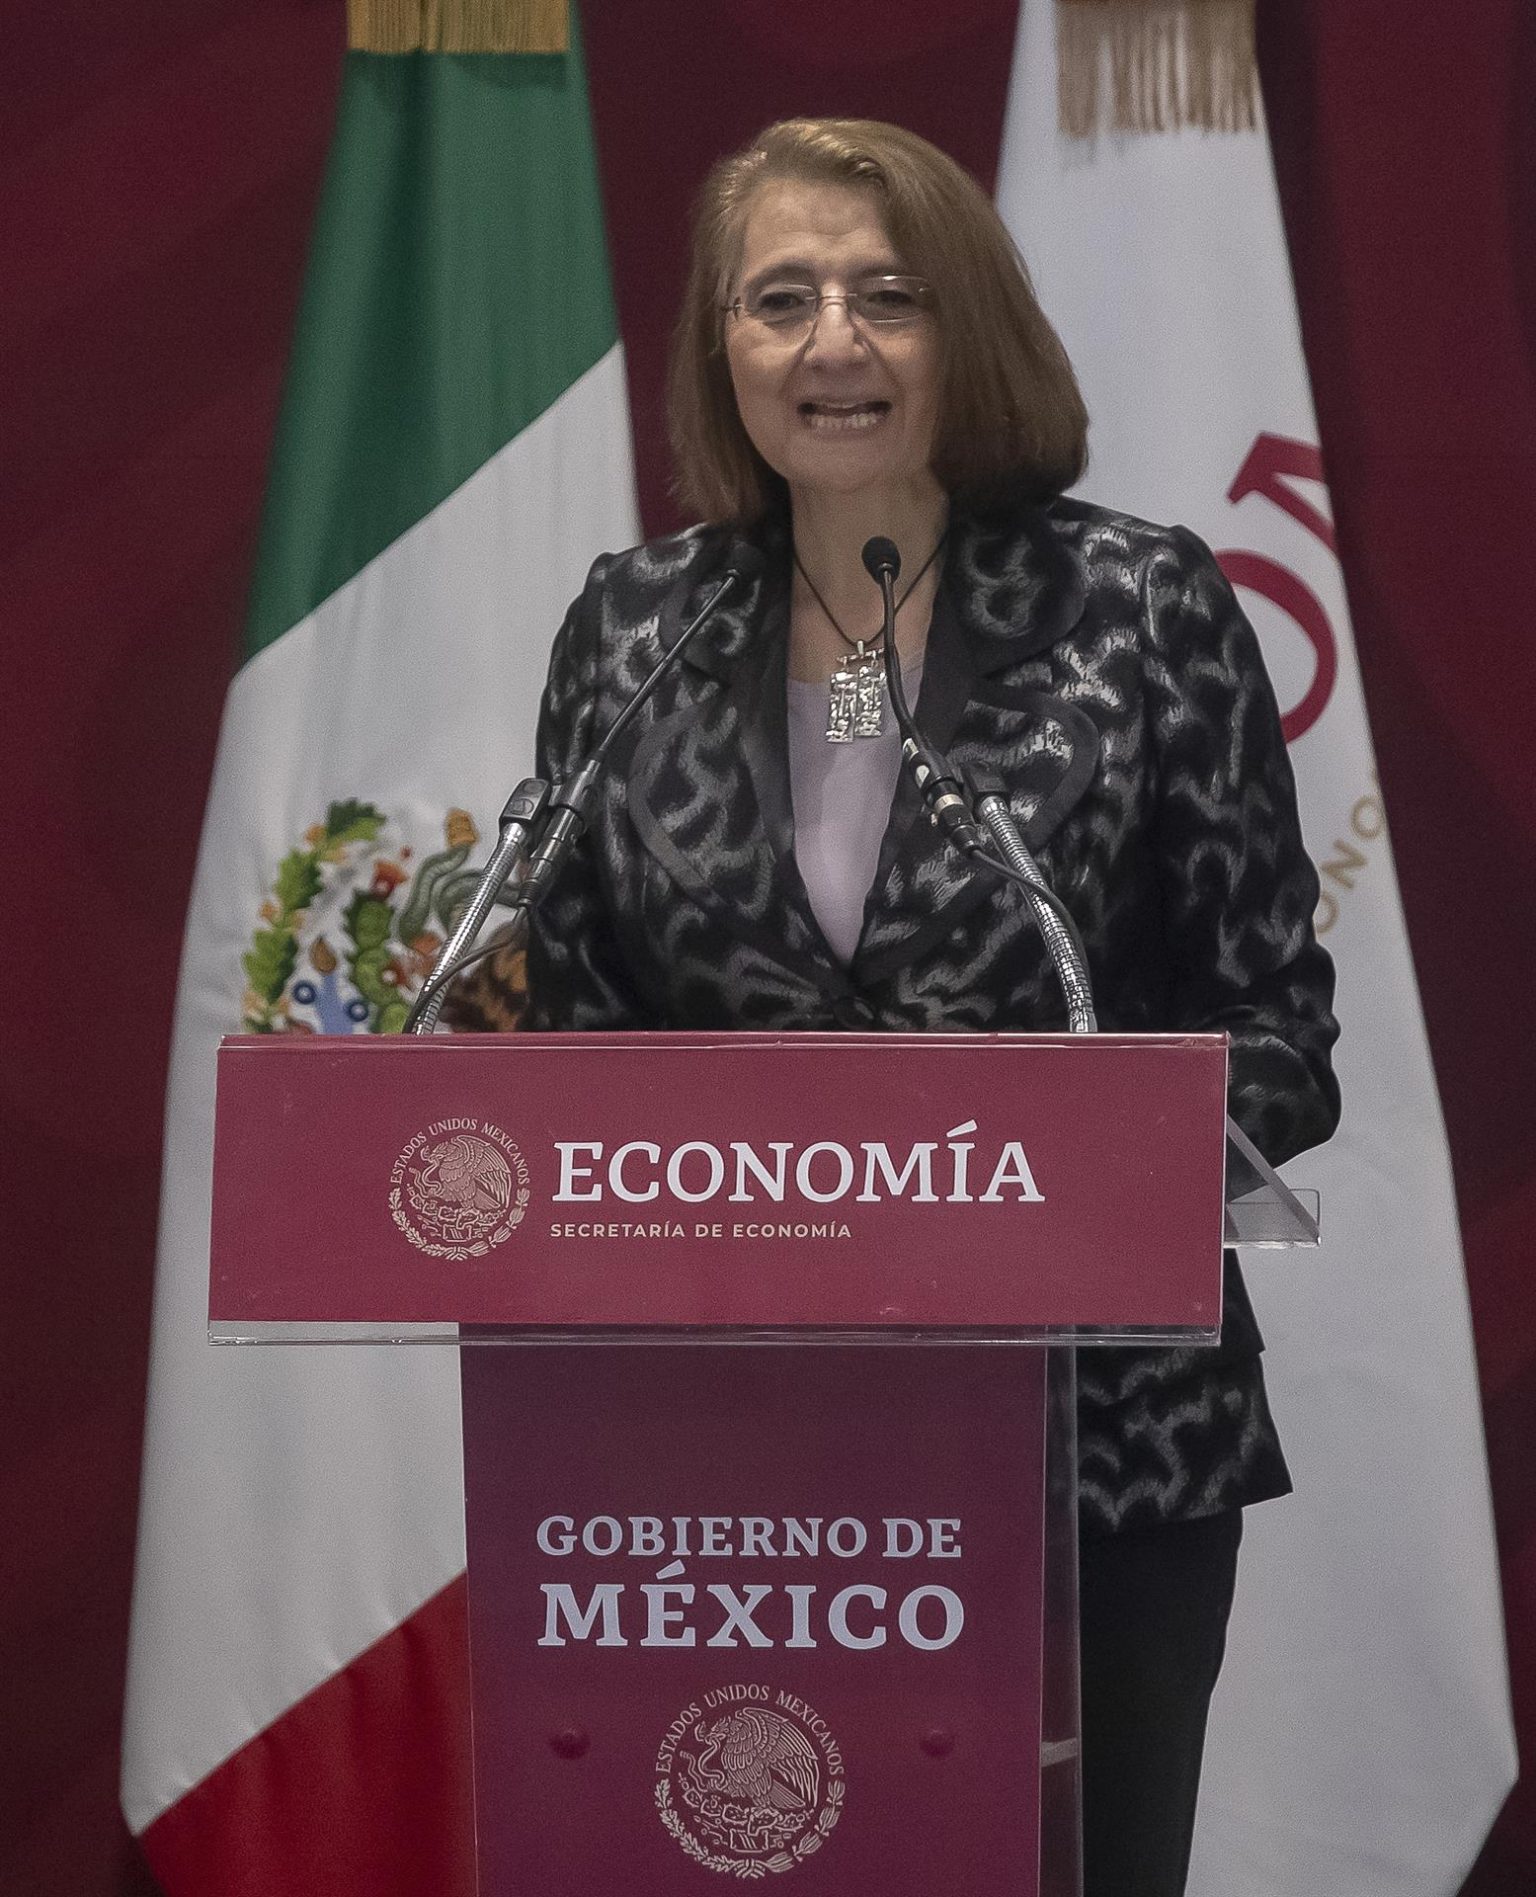 La subsecretaria de Economía, Luz María de la Mora, habla hoy durante una conferencia de prensa en la Ciudad de México(México). EFE/Isaac Esquivel